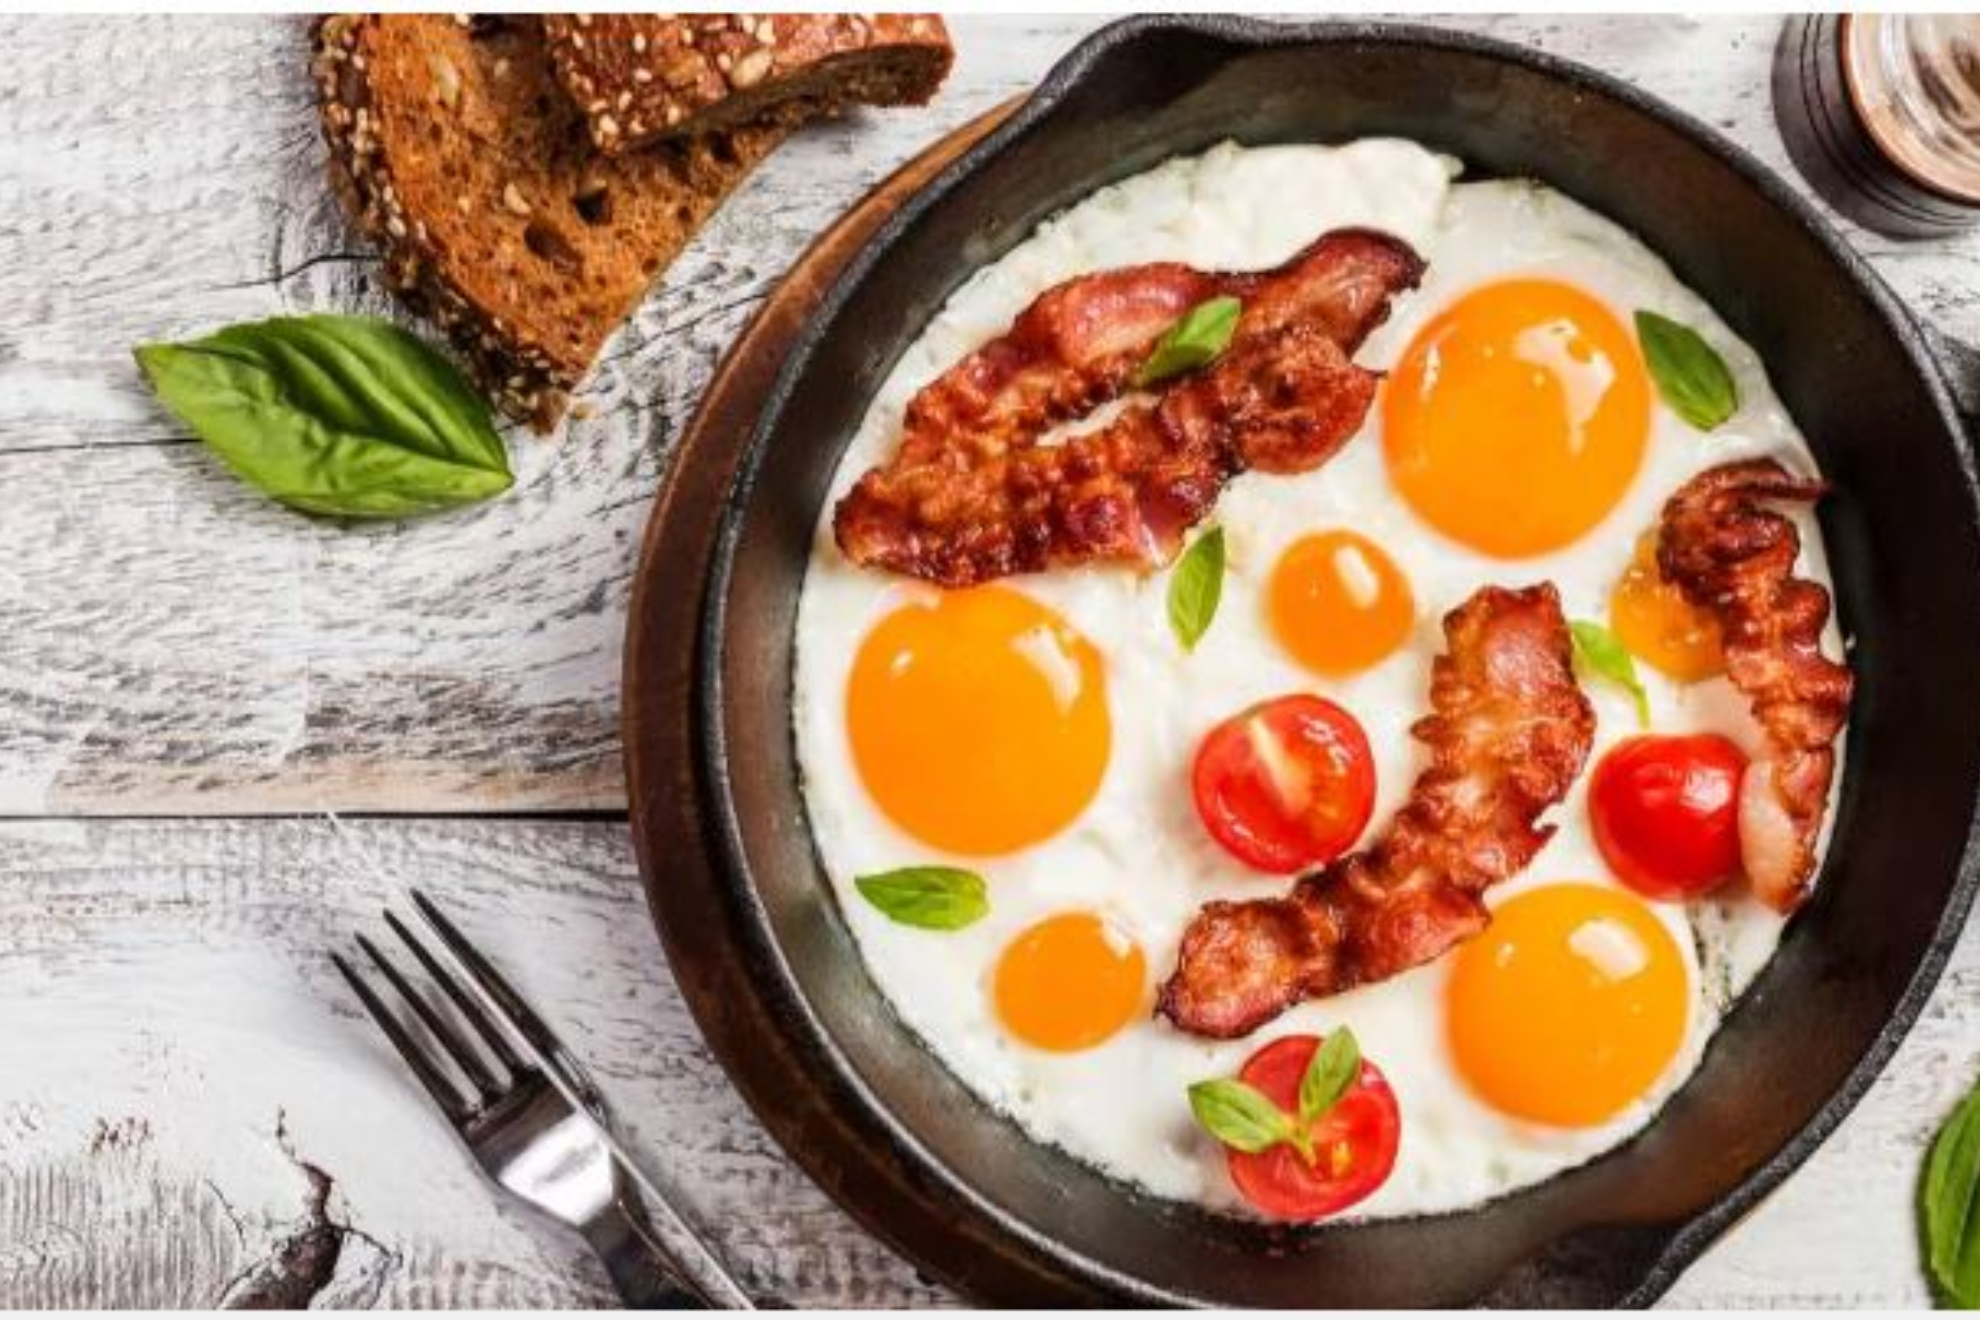 ¿Es saludable cenar seis huevos como Luis Enrique?